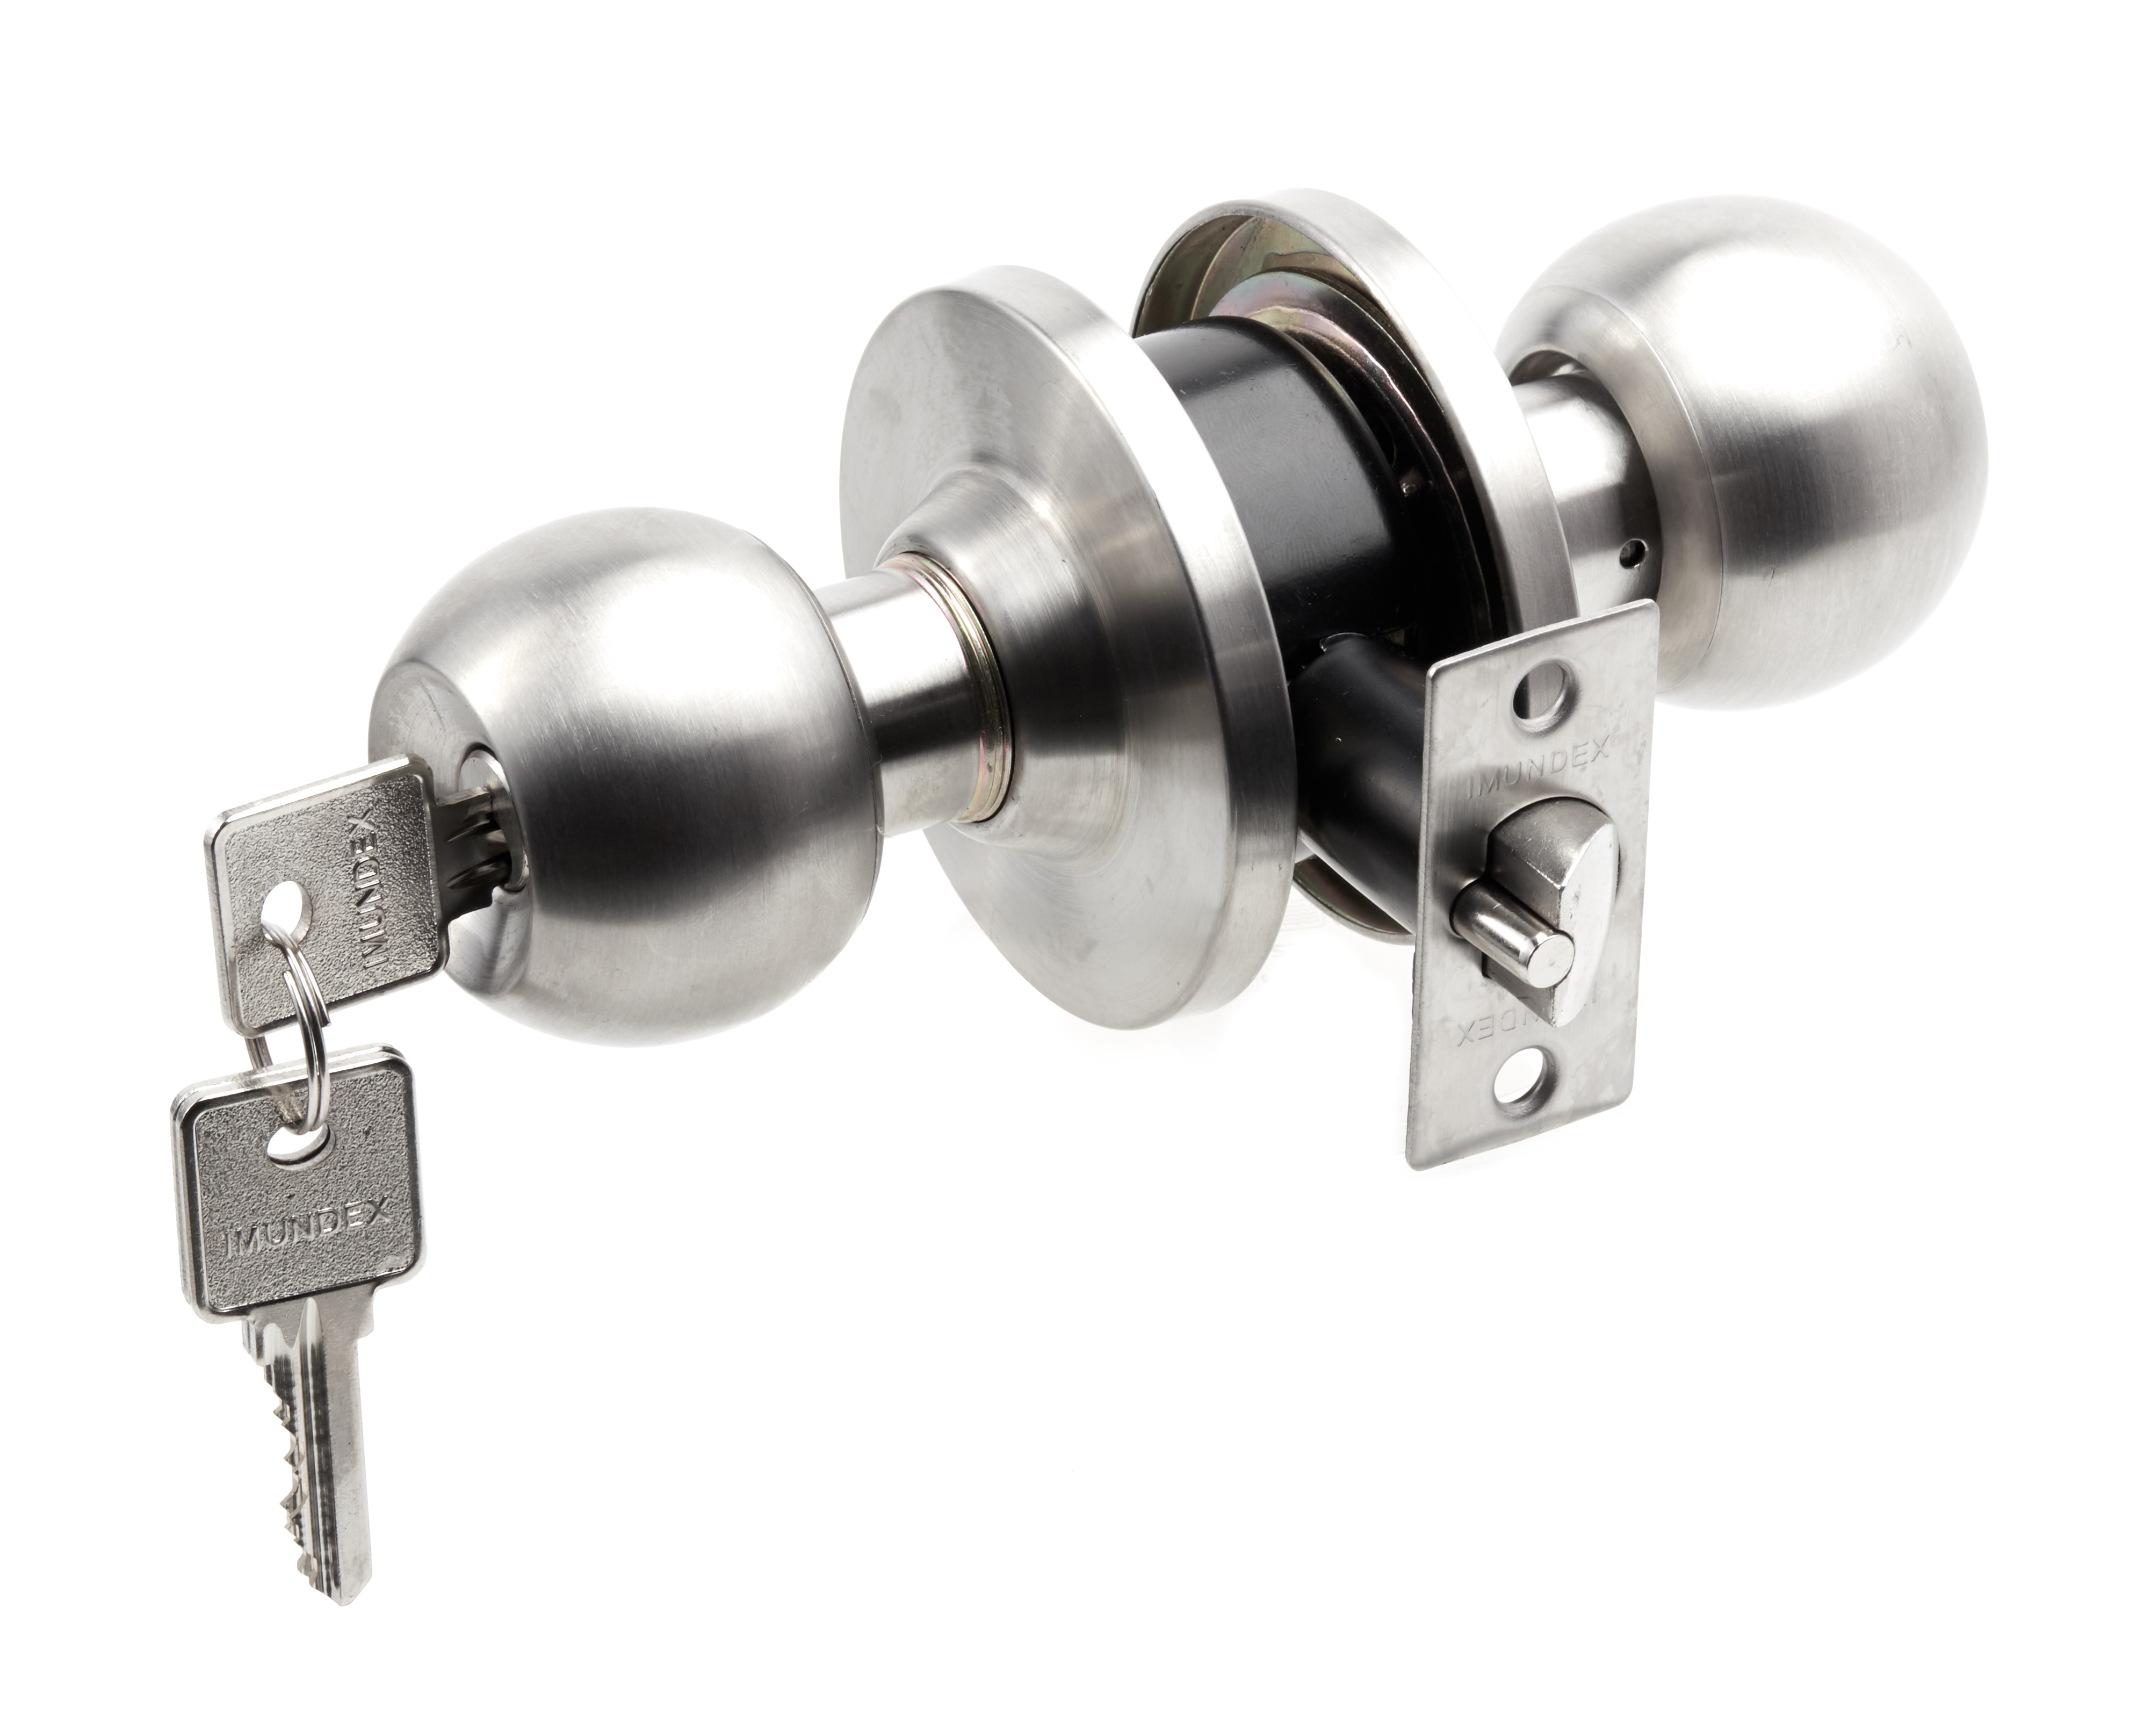 Push and key knob lockset